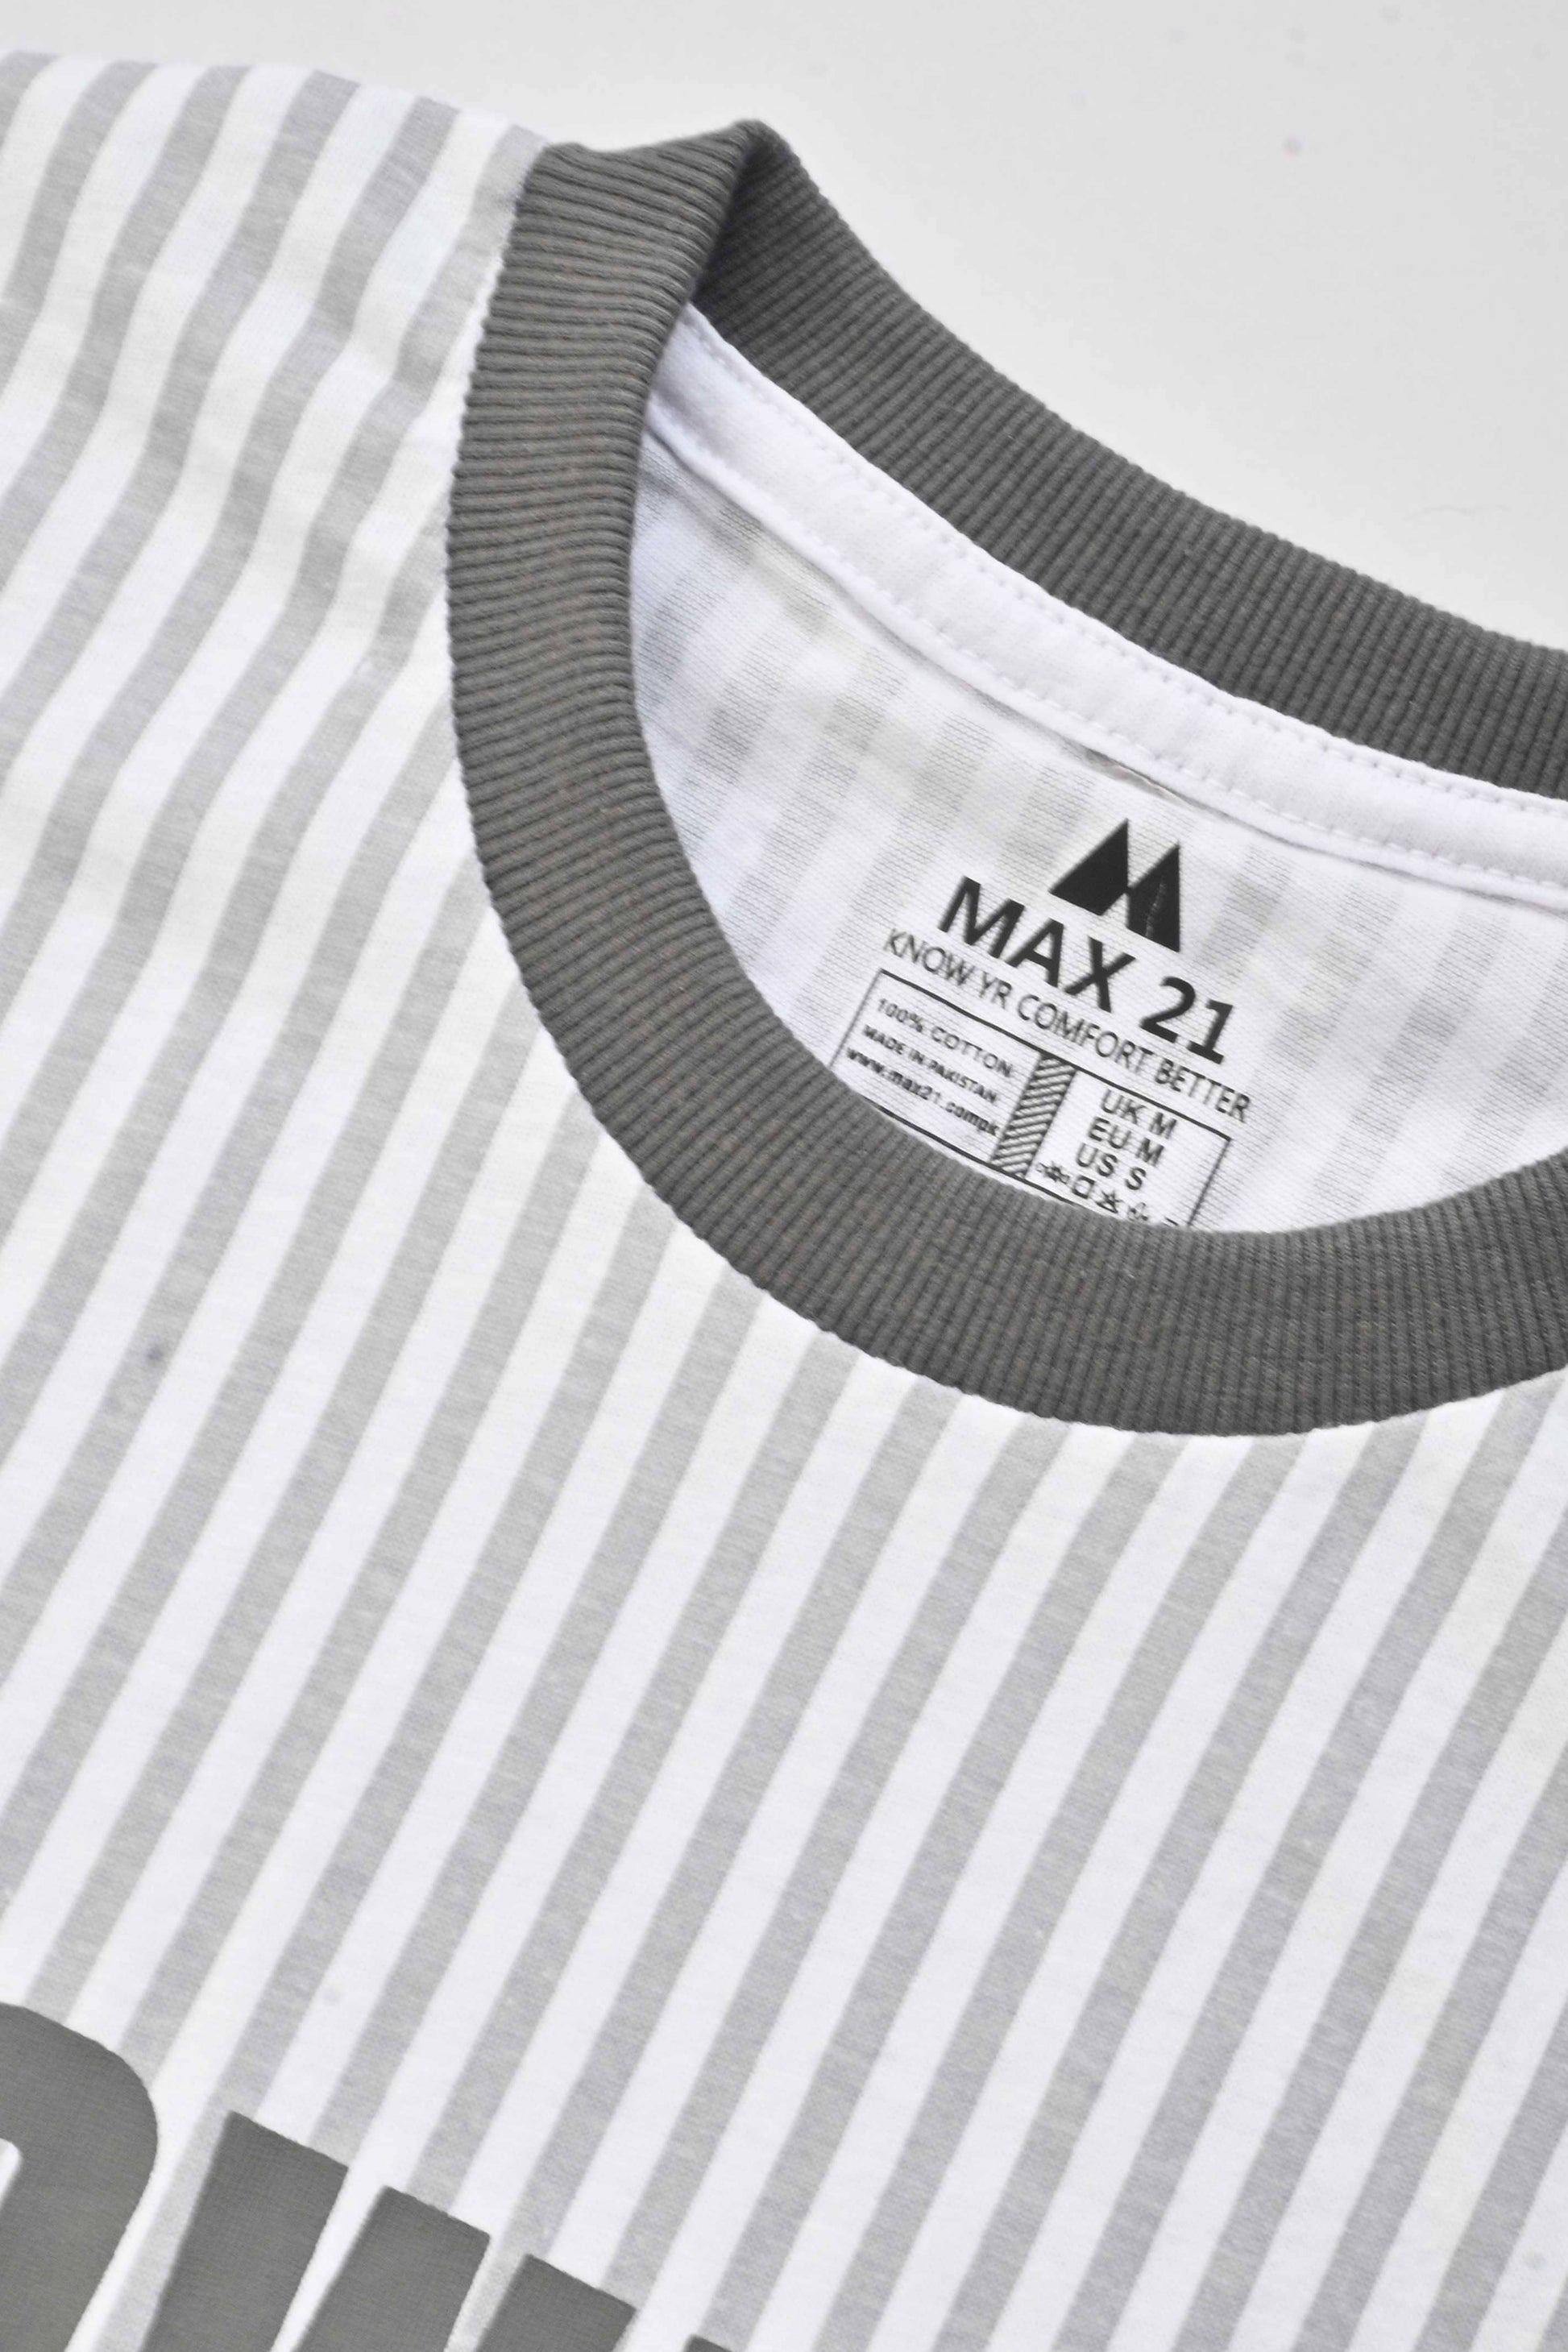 Max 21 Men's Rumbek Power Player Printed Tee Shirt